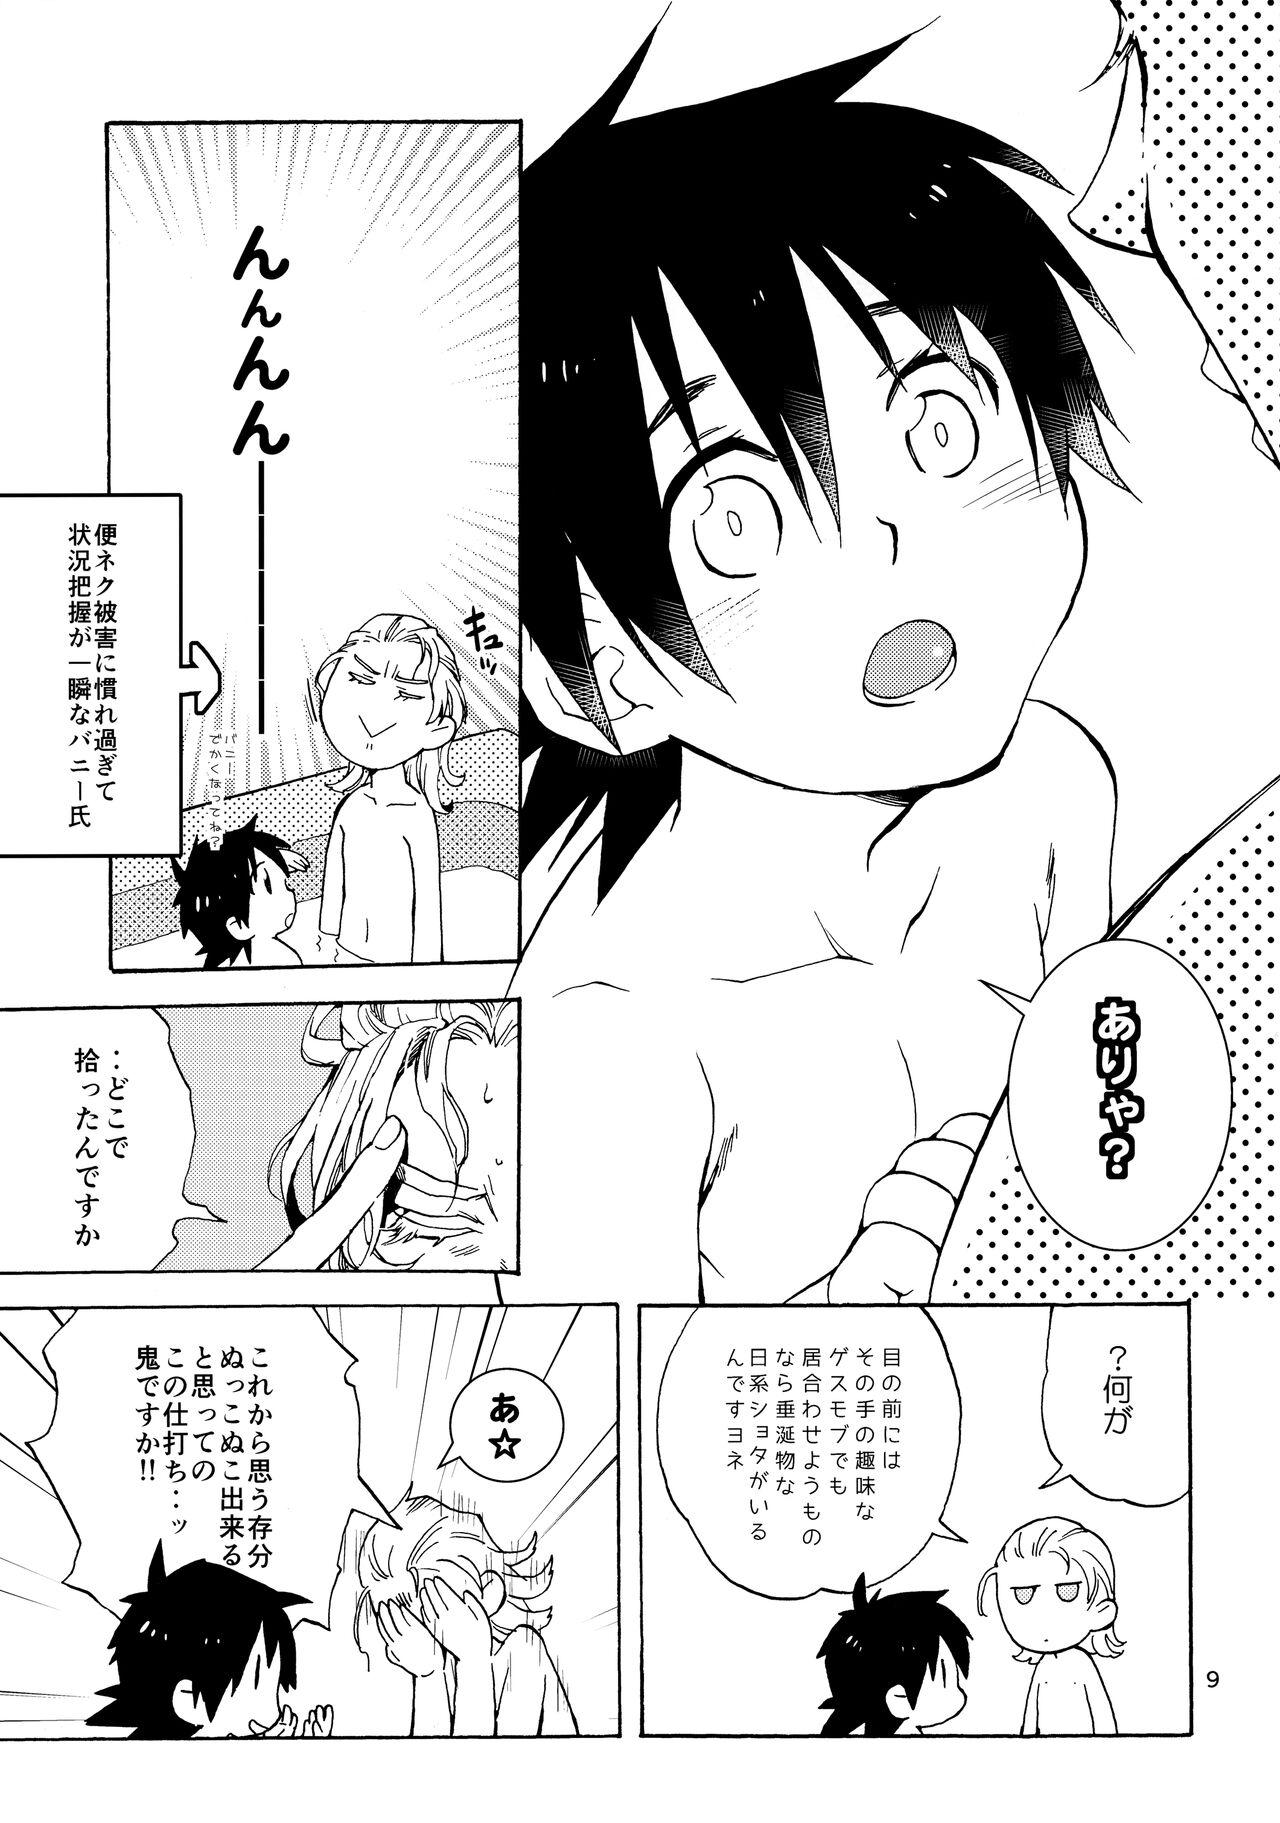 Suck Shota Touru-san ni wa Bunny no Junior wa Tatanai - Tiger and bunny Verga - Page 8